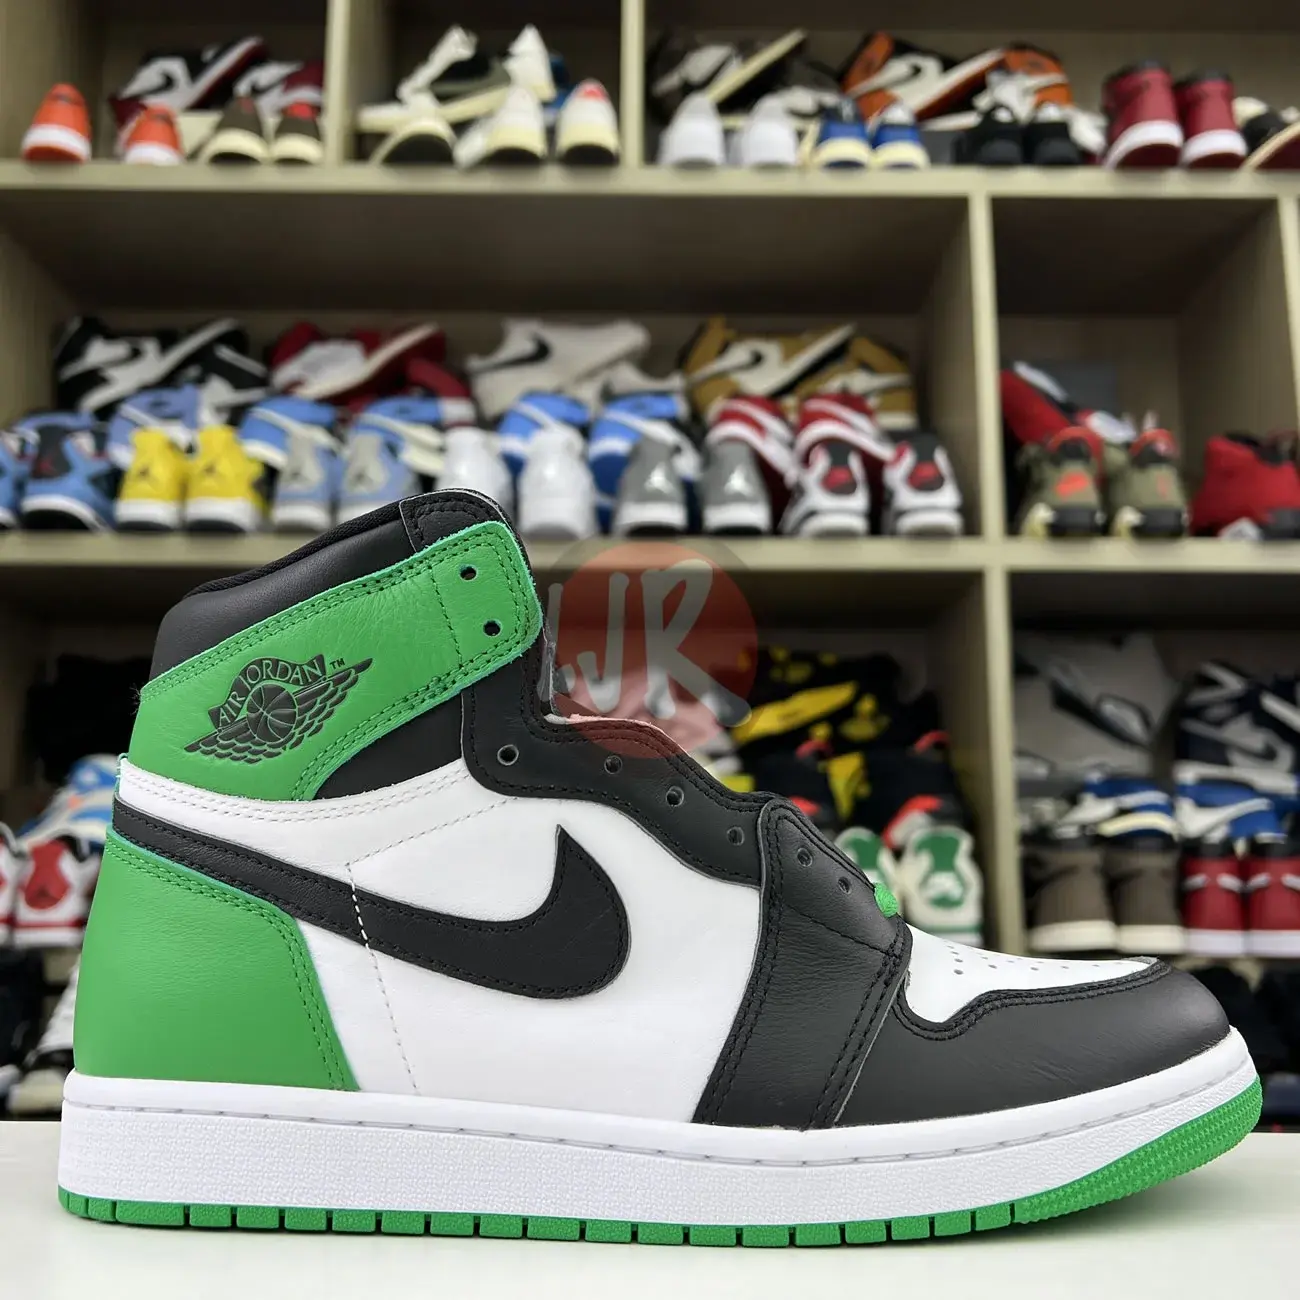 Air Jordan 1 Retro High Og Lucky Green Dz5485 031 Ljr Sneakers (21) - bc-ljr.net